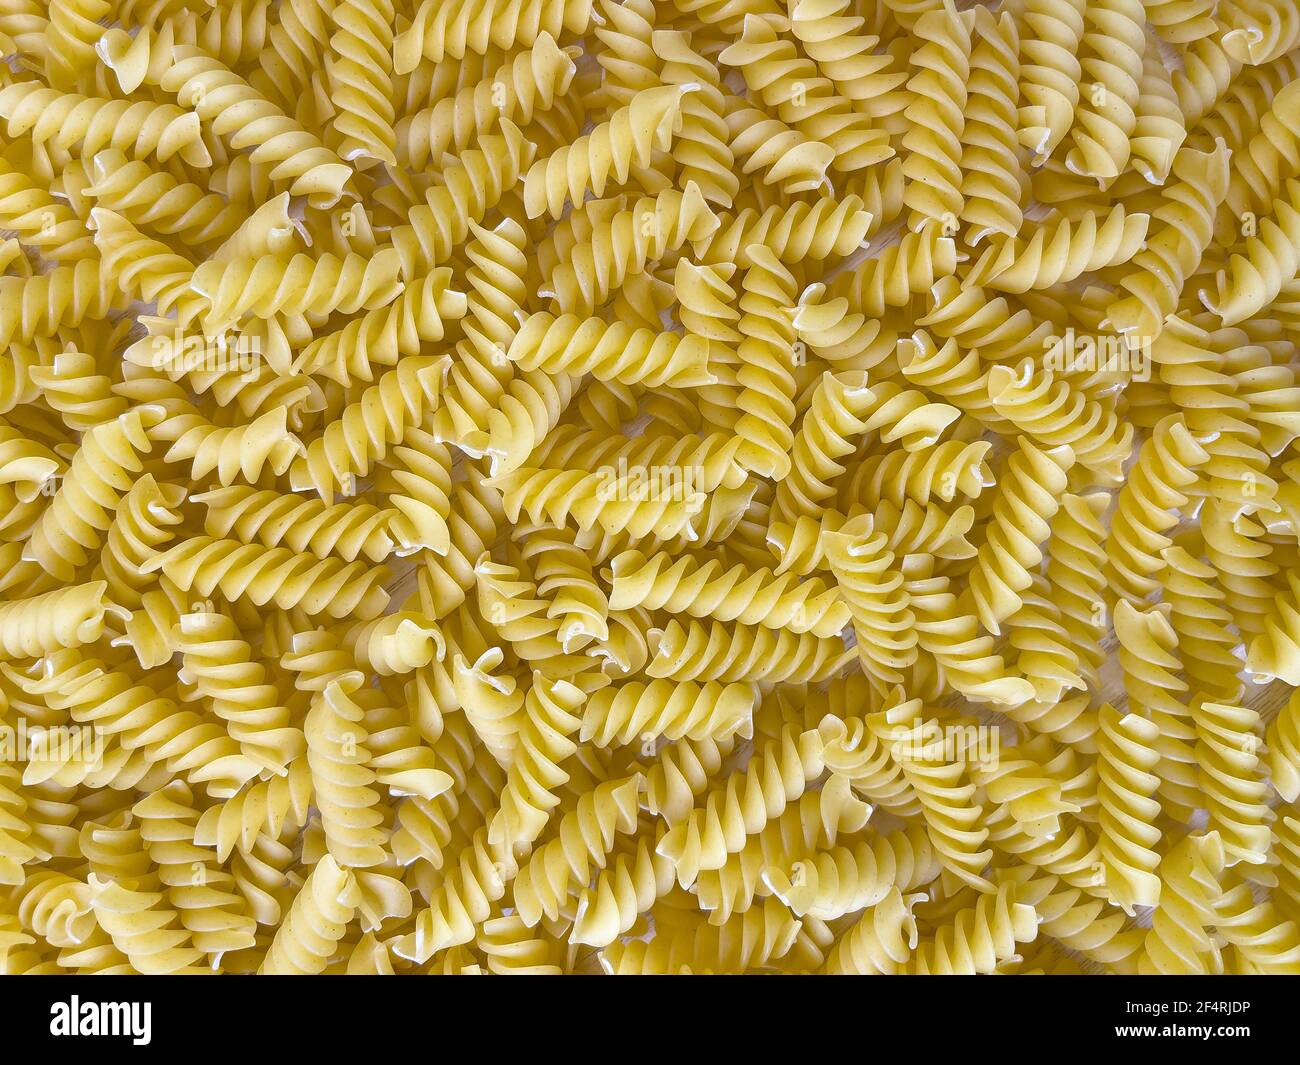 Fond ou texture de la nourriture pâtes italiennes sèches crues en forme de spirale. Gros plan, macro, vue de dessus. Macaroni non cuit Banque D'Images